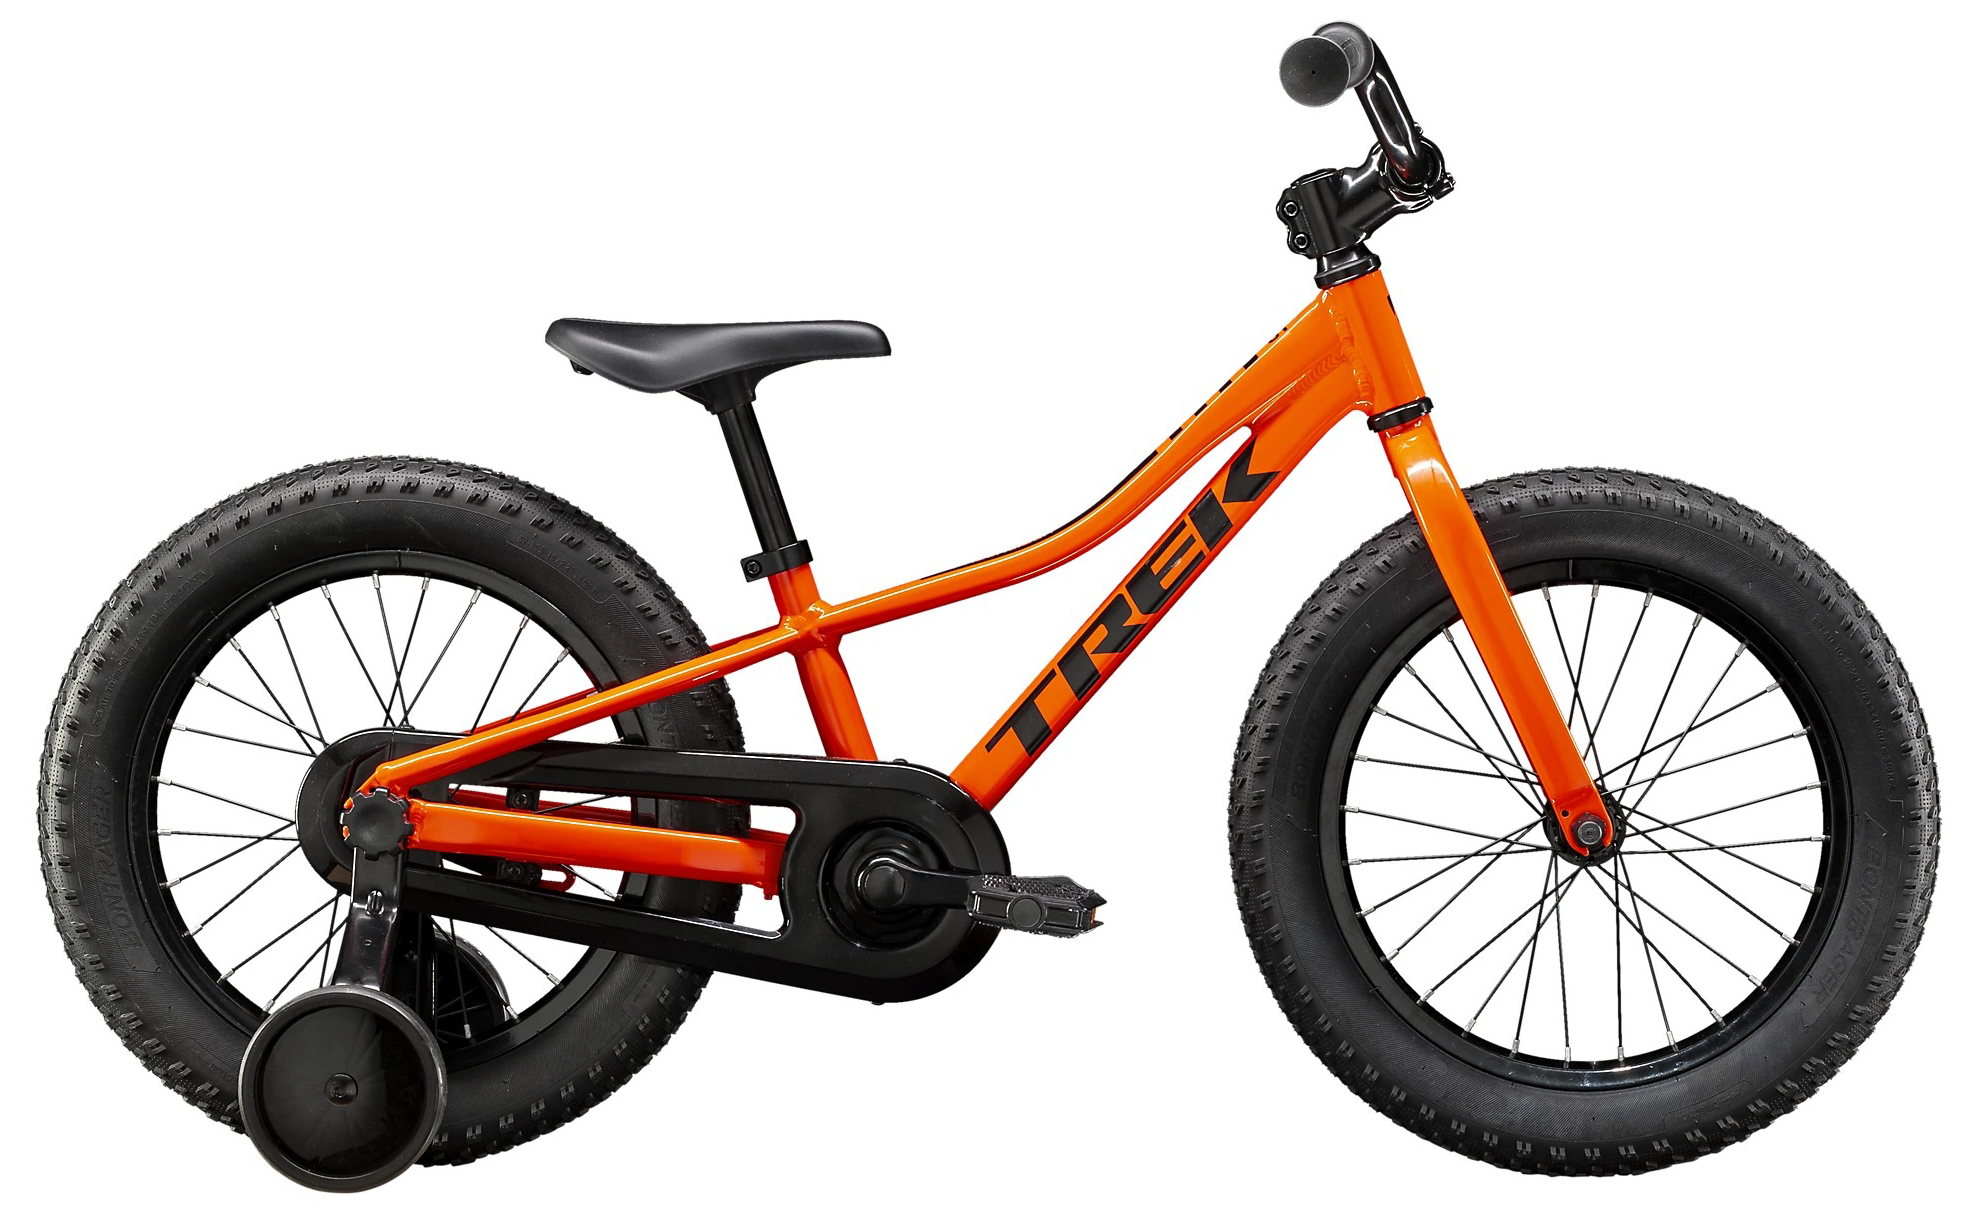  Отзывы о Детском велосипеде Trek PreCaliber 16 Boys 2020